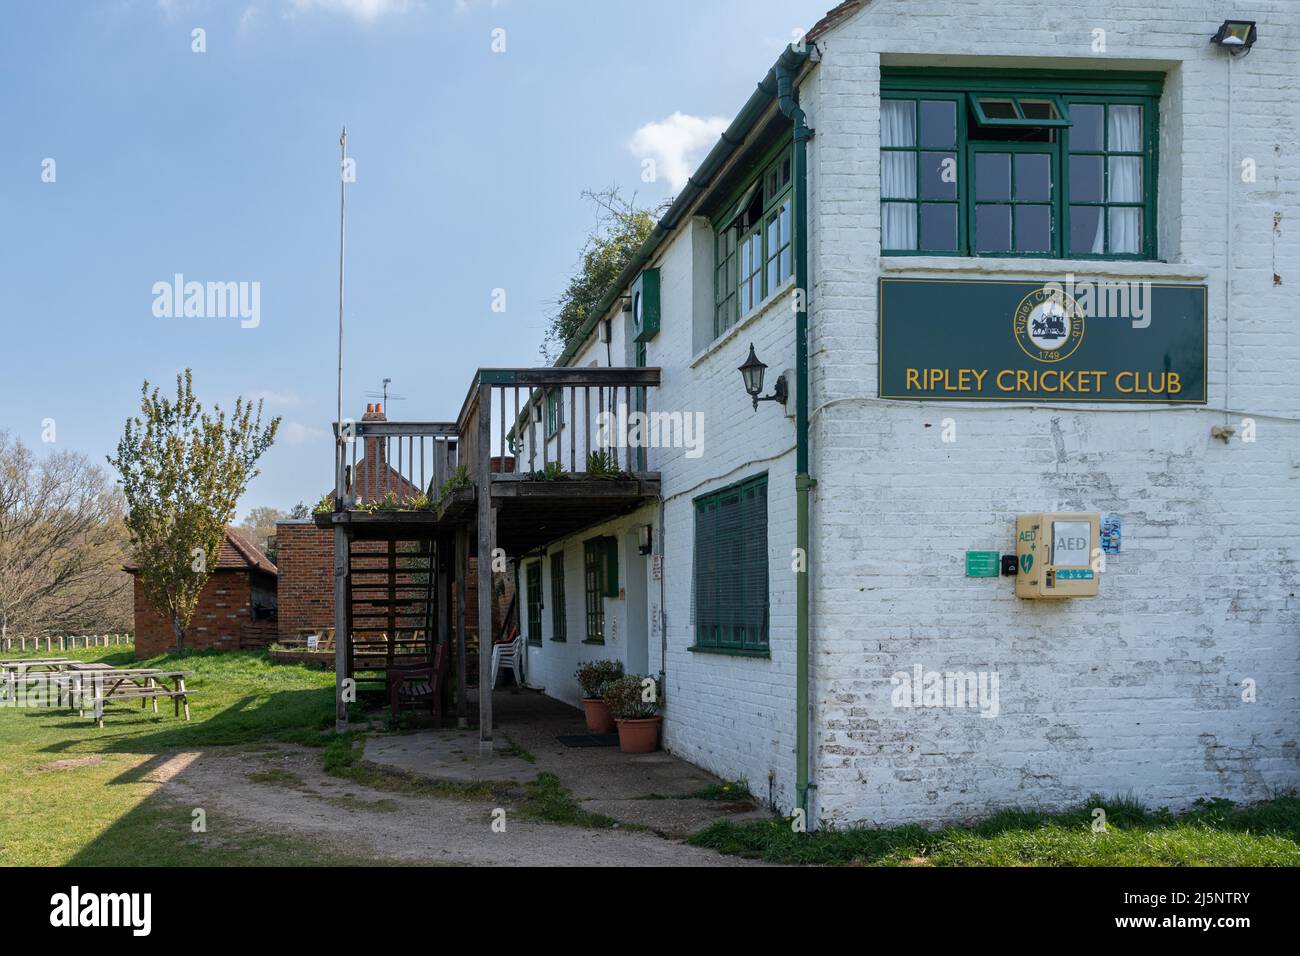 Edificio de pabellón Ripley Cricket Club junto al campo de cricket, Surrey, Inglaterra, Reino Unido Foto de stock